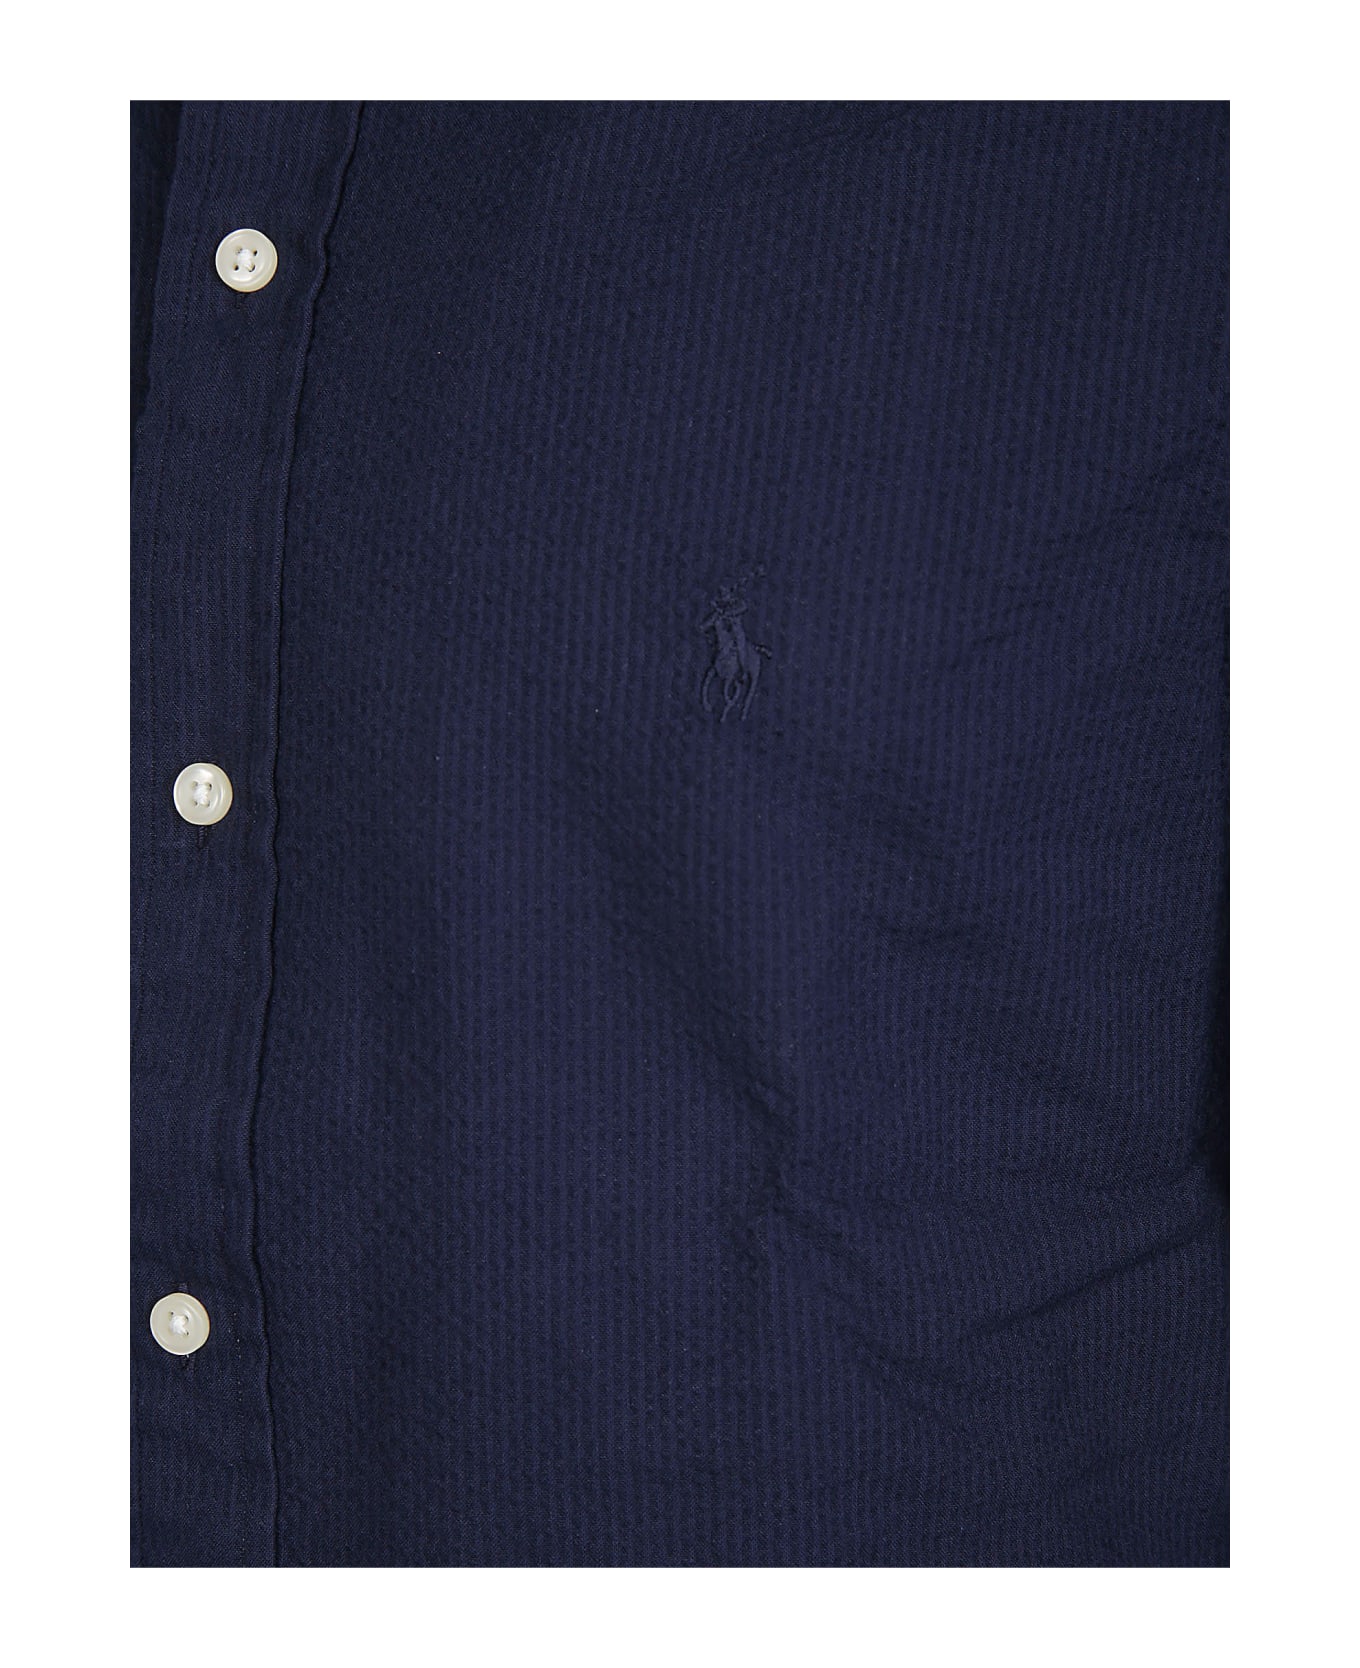 Polo Ralph Lauren Long Sleeve Sport Shirt - Astoria Navy